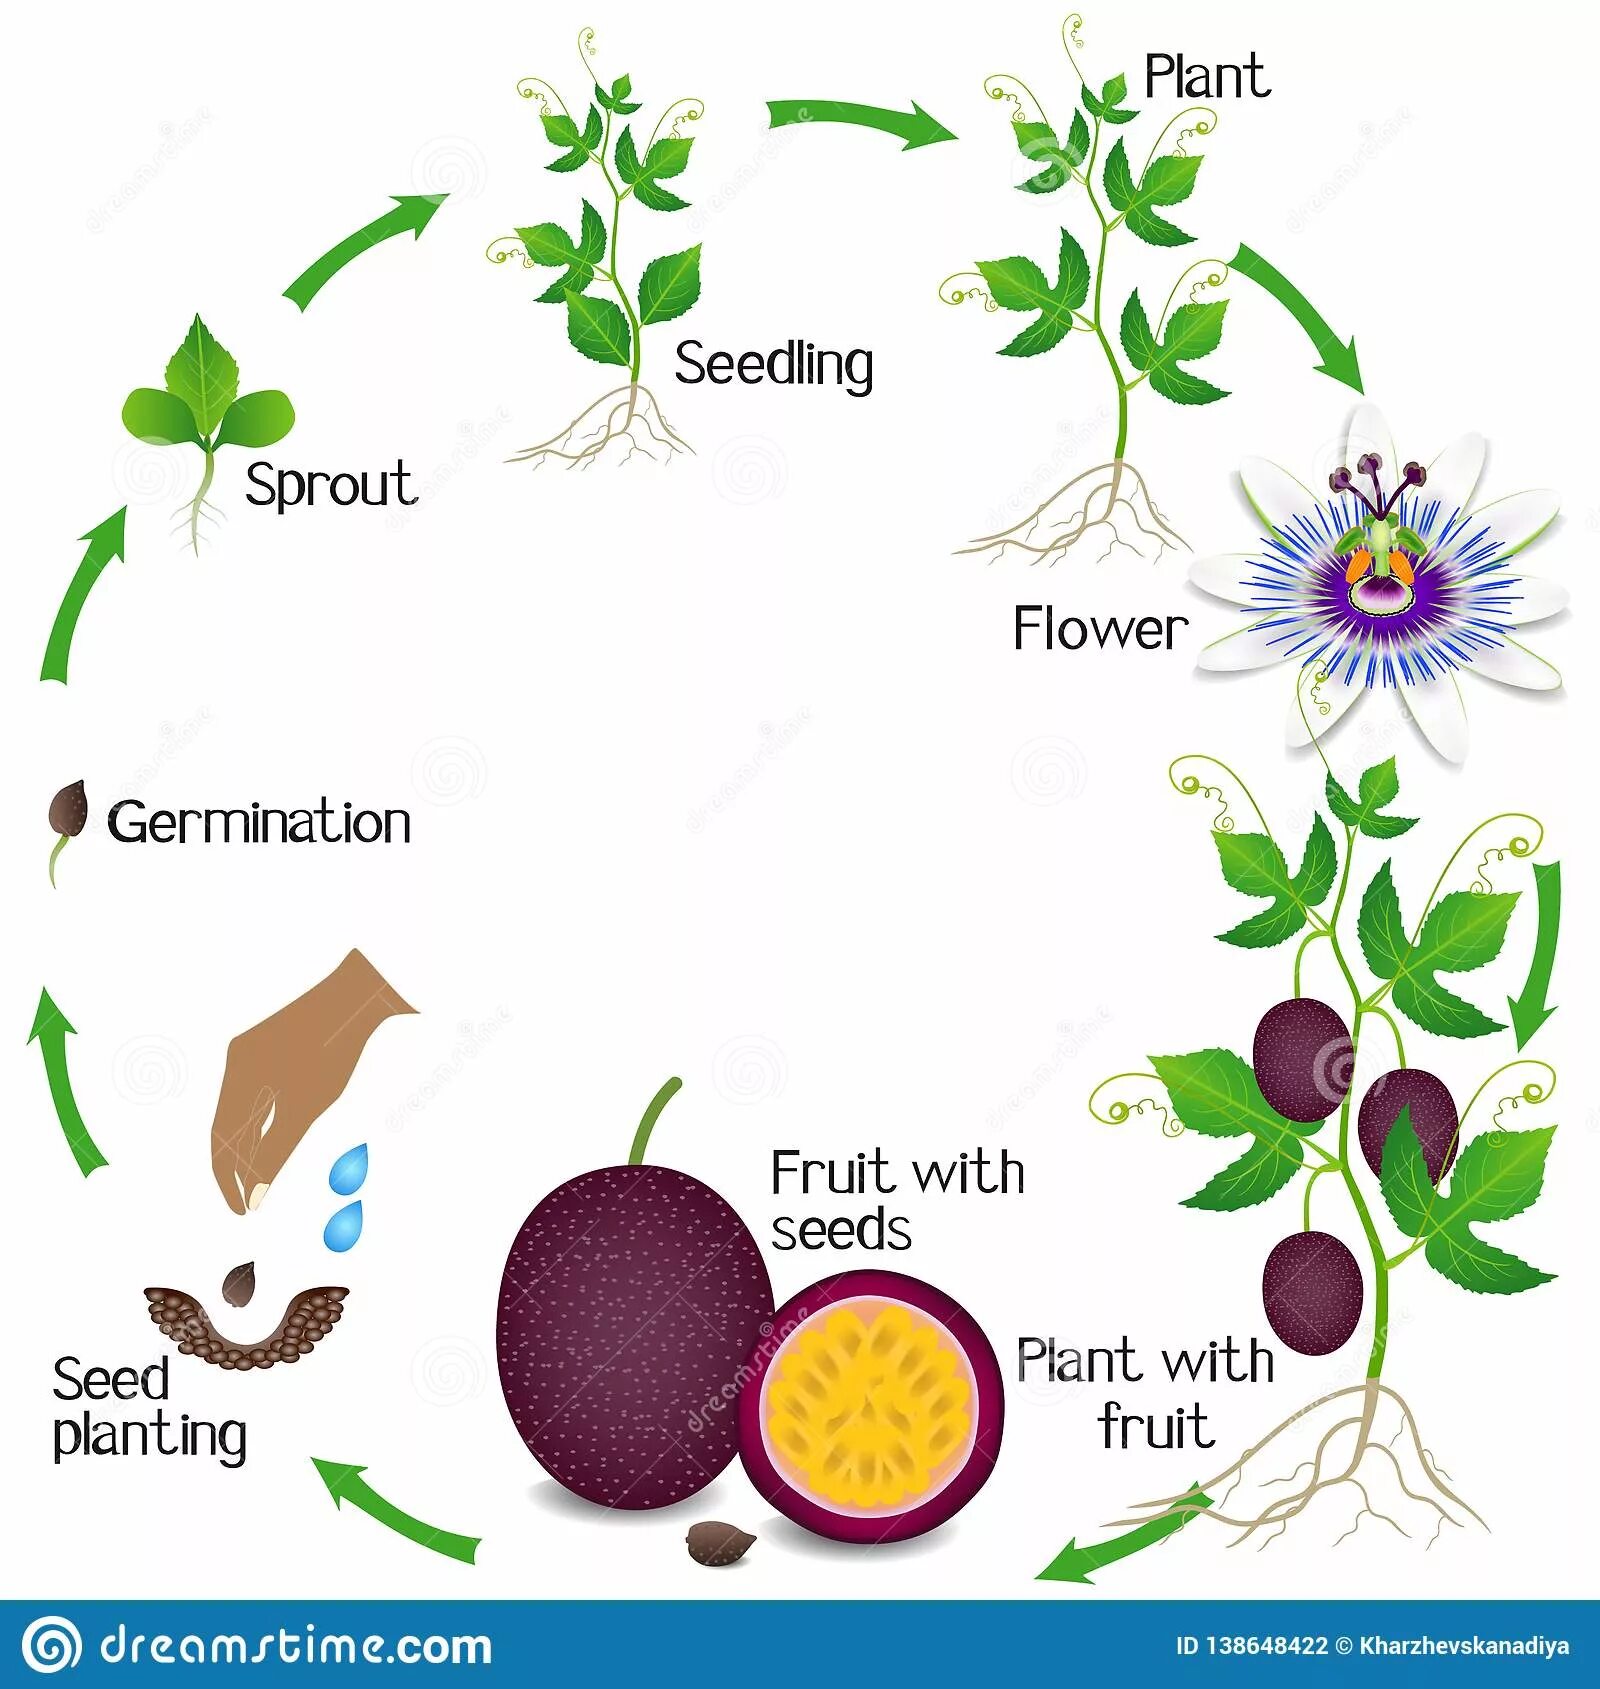 Жизненный цикл овощных растений по маркову. Жизненный цикл маракуйи. Маракуйя жизненный цикл фото. Маракуйя цветовая схема. Маракуйя размножение растения.